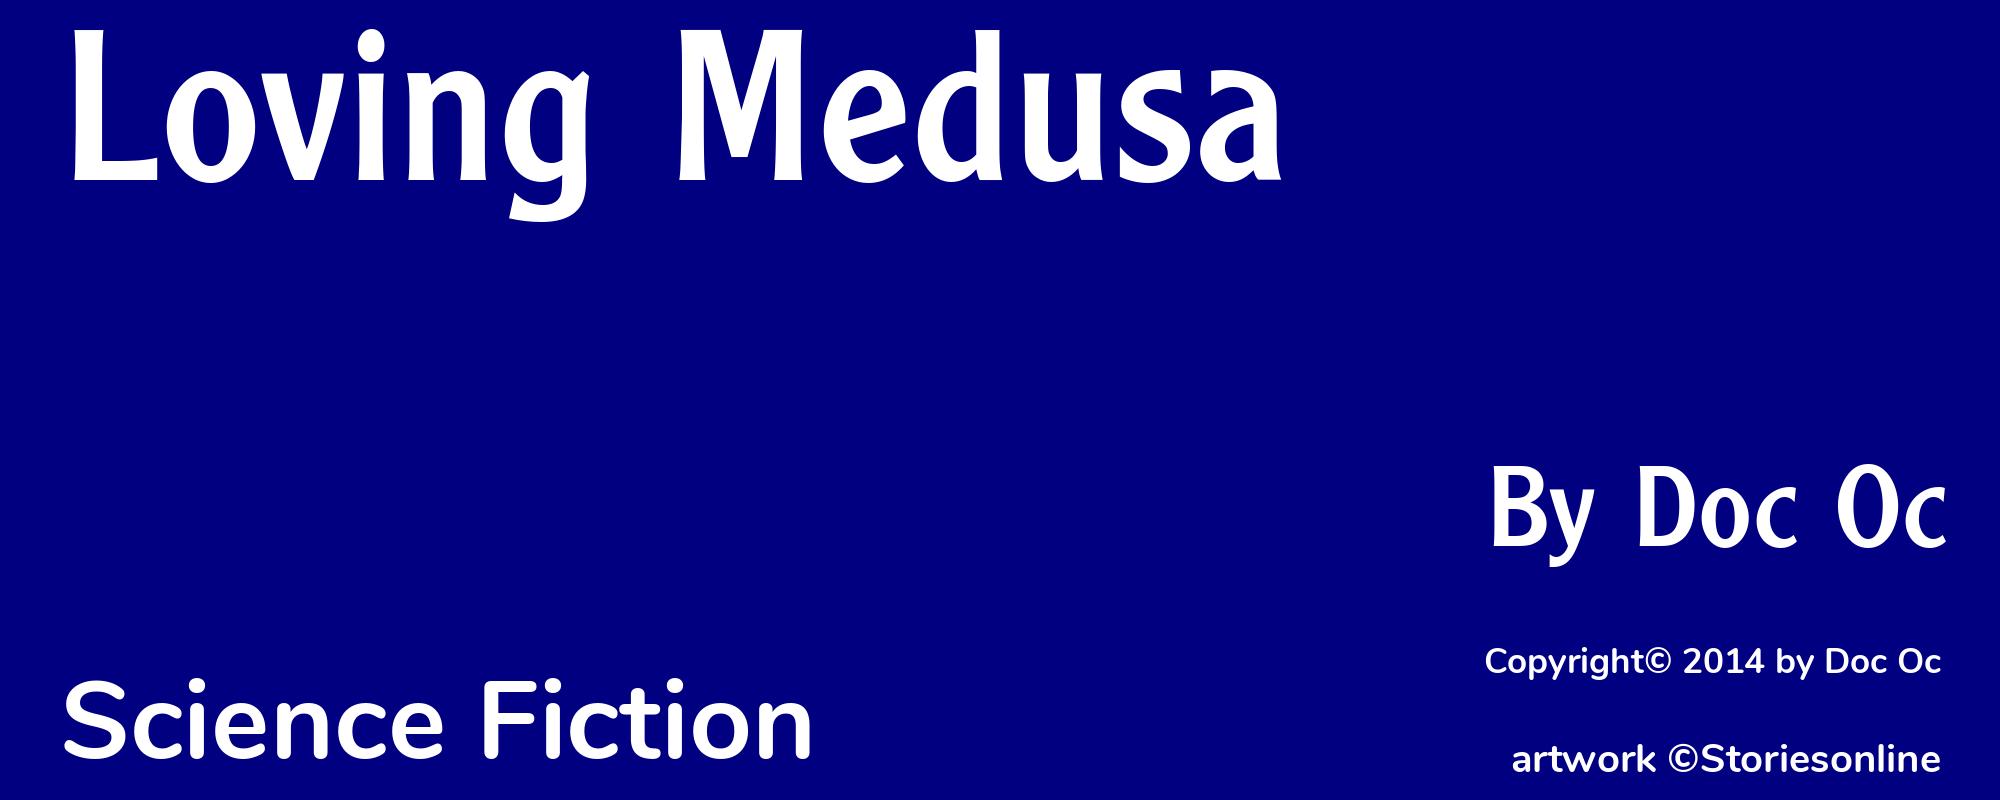 Loving Medusa - Cover